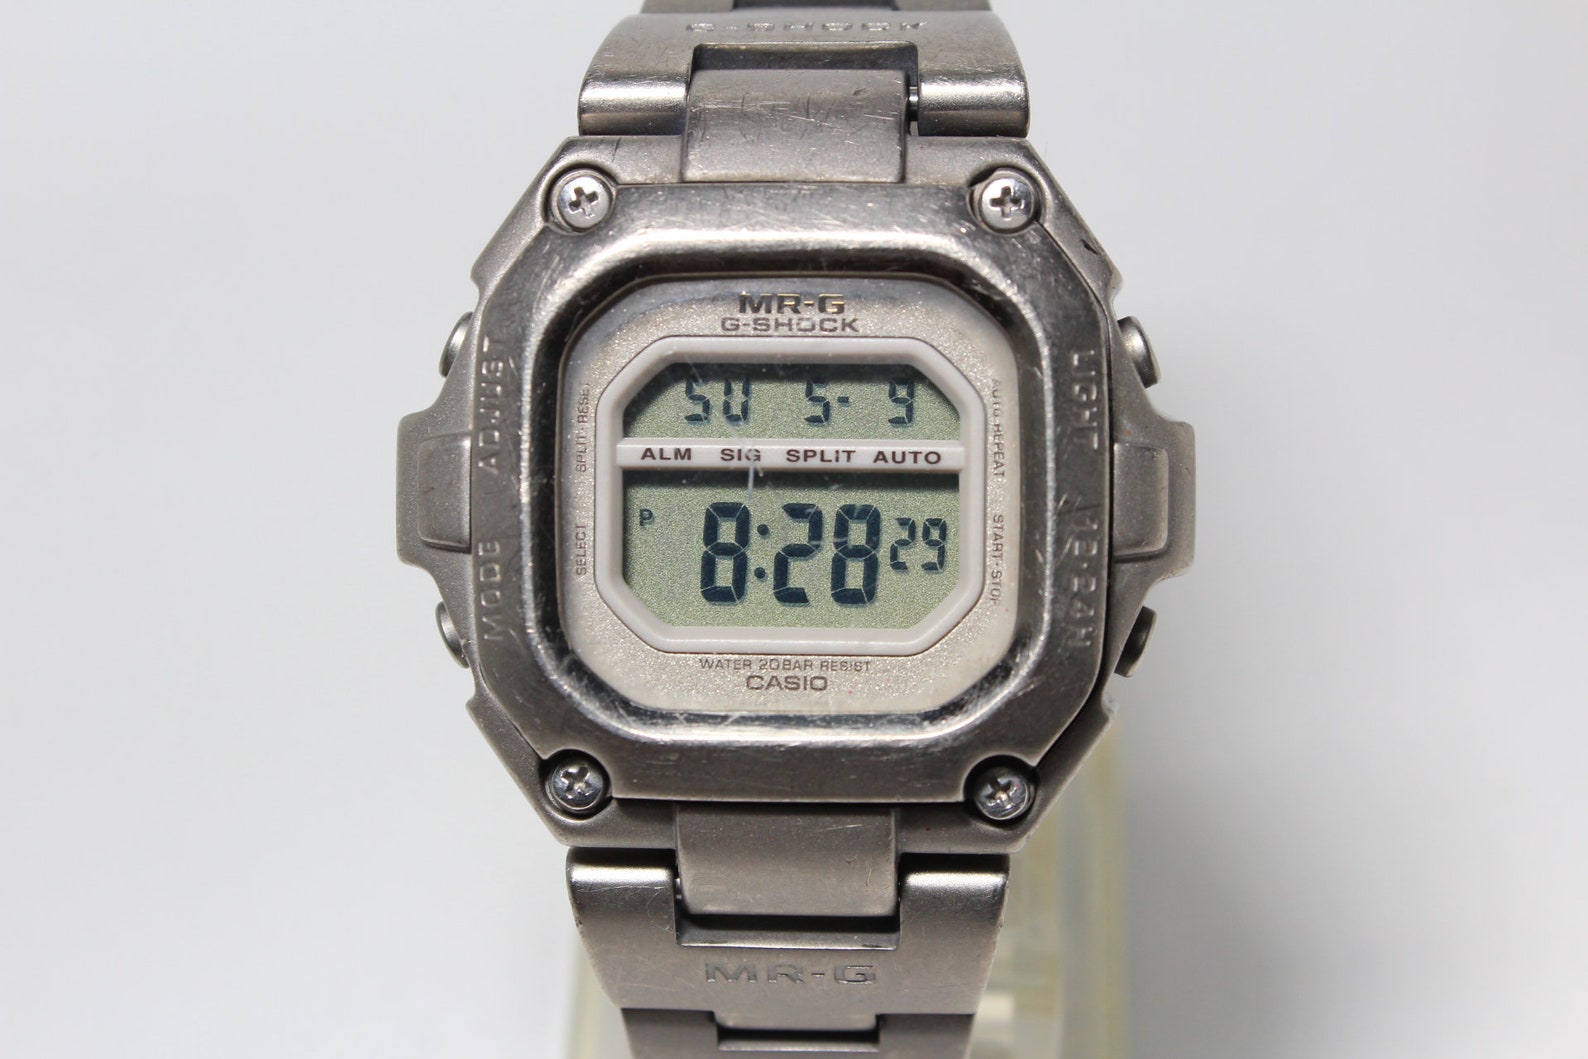 Casio G-Shock MR-G MRG-110T Titanium watch shock resistant | Etsy